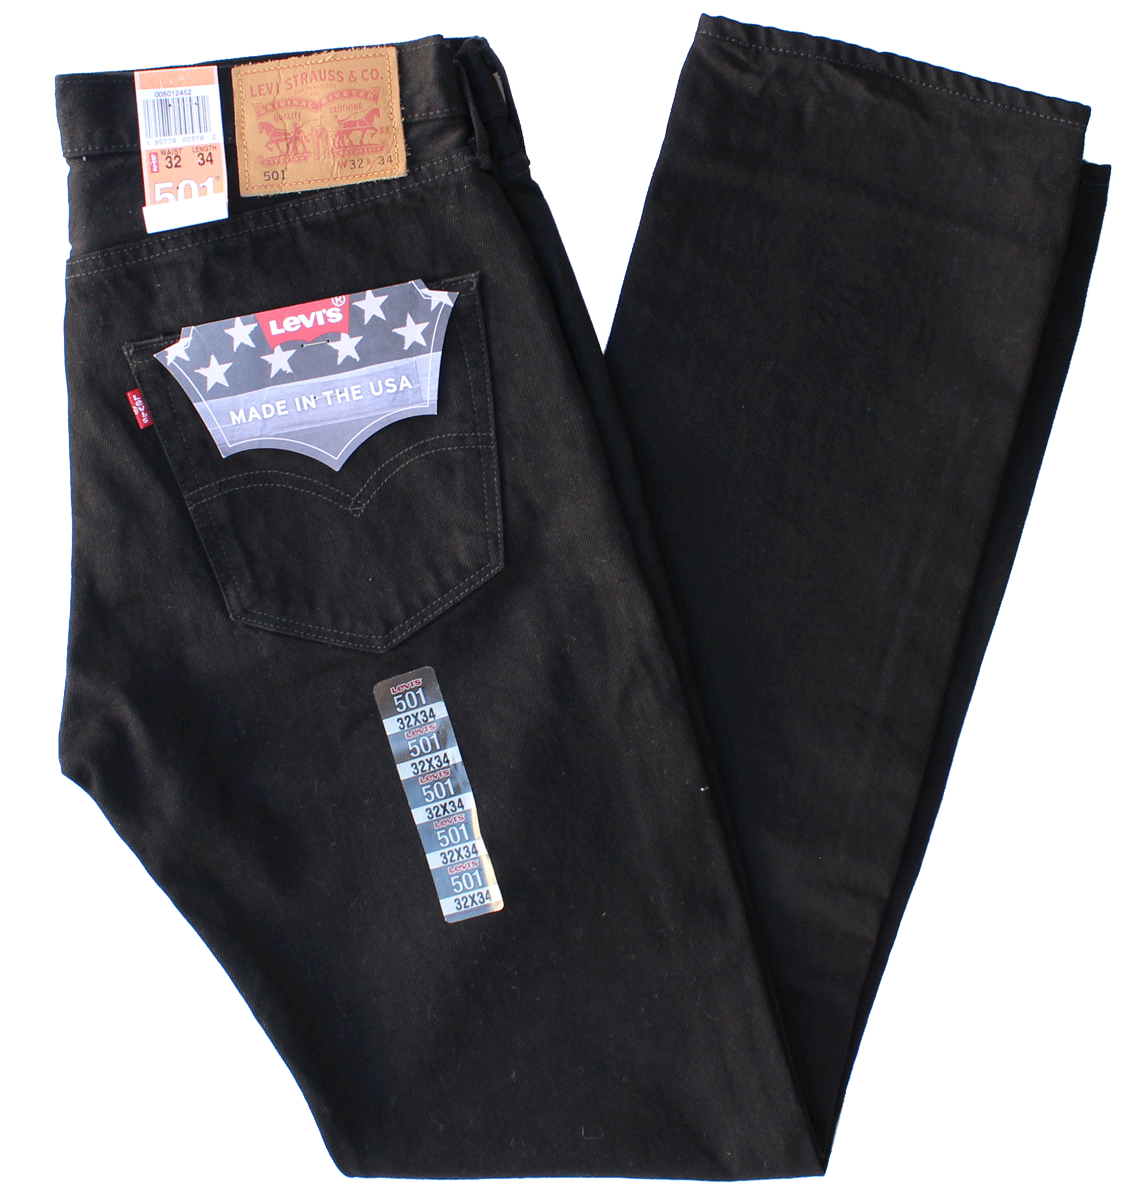 levi 501 black jeans sale